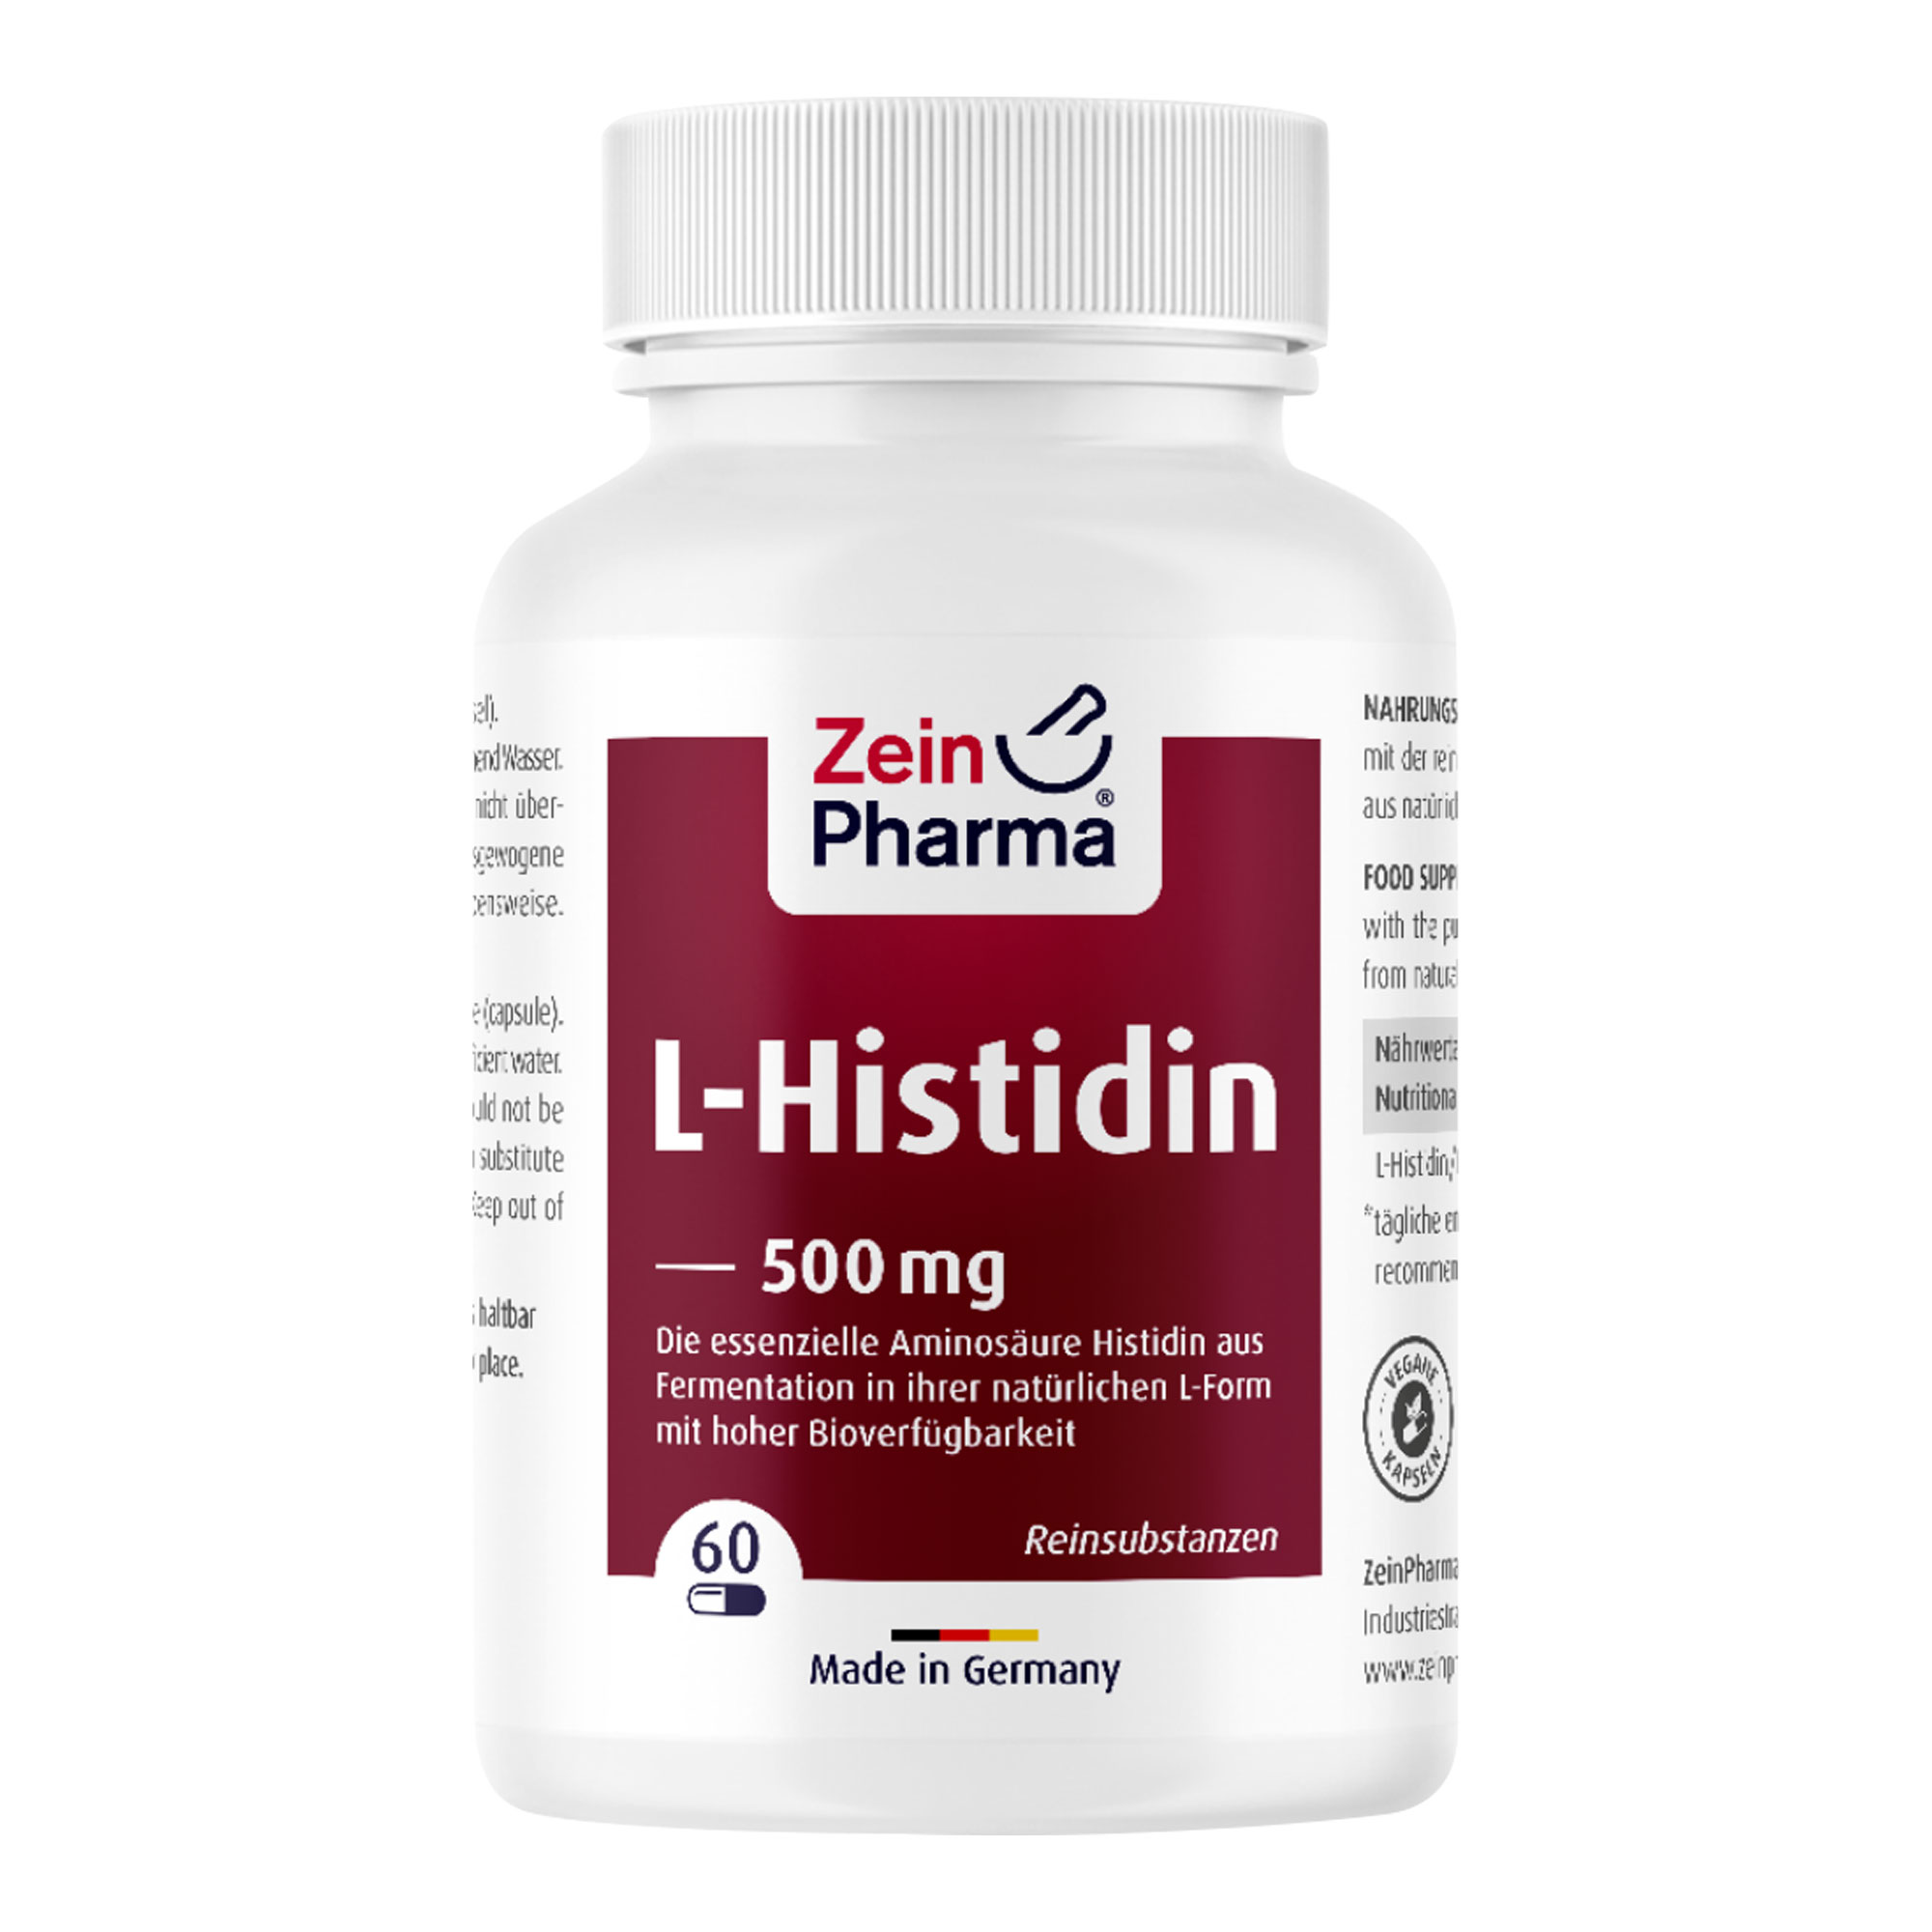 Nahrungsergänzungsmittel mit der reinen Aminosäure L-Histidin als Basenform aus natürlicher Fermentation.